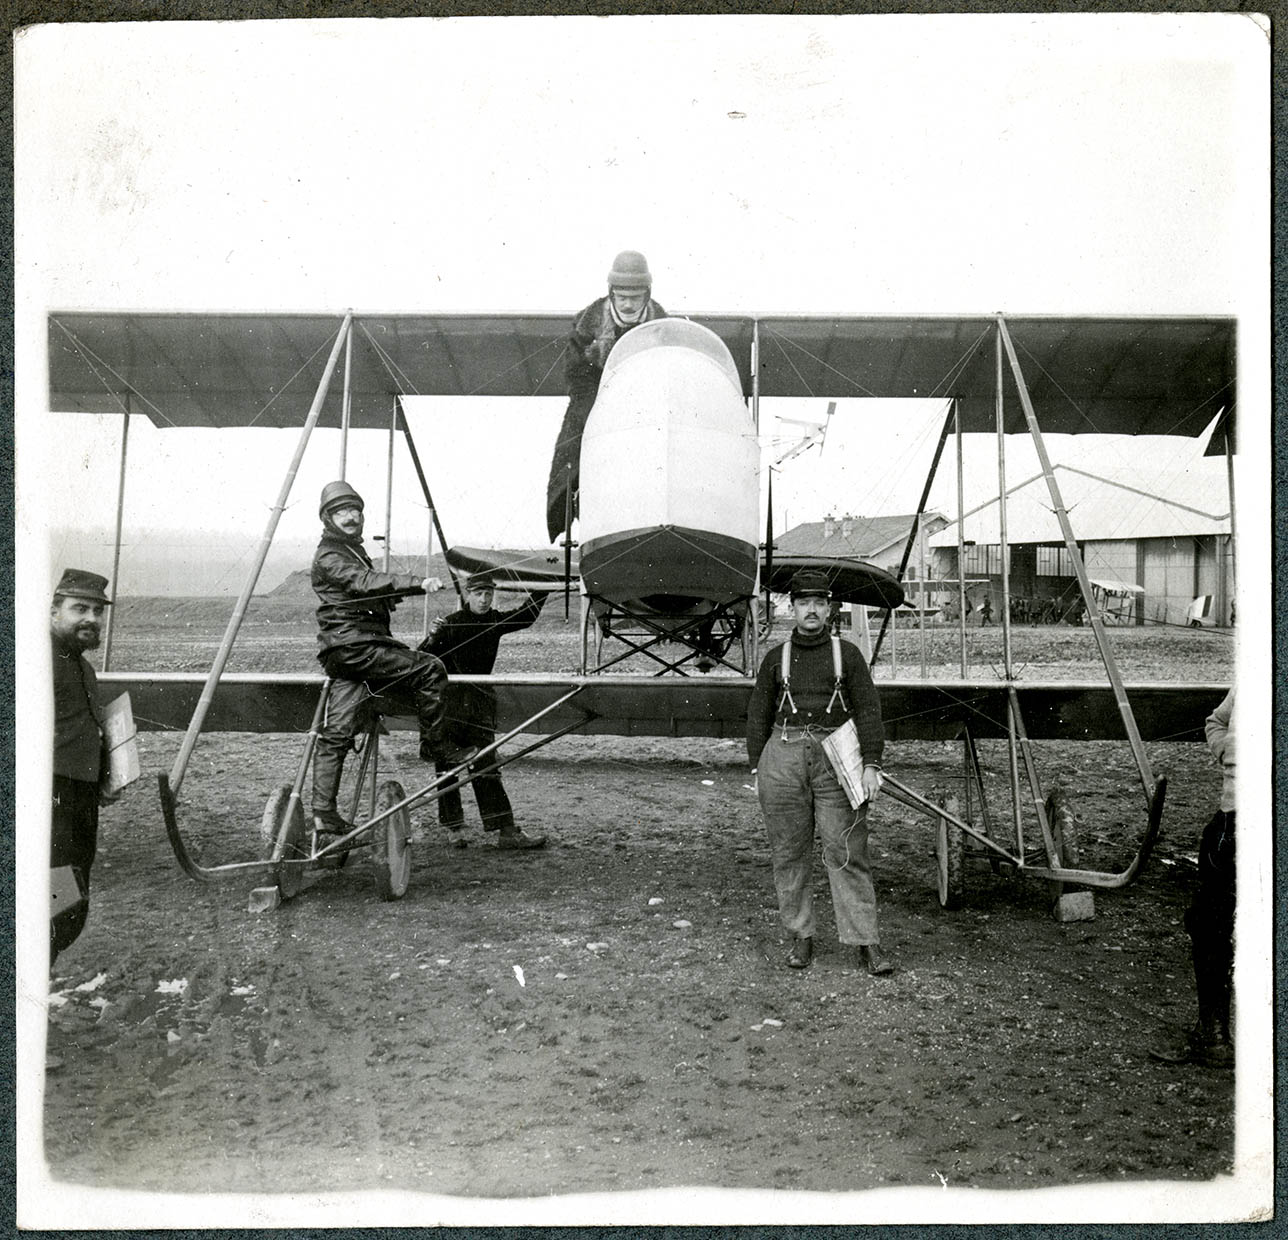 Belfort, Centre aéronautique militaire, Champ-de-Mars (Parc-à-Ballons), devant les hangars des aéroplanes, le 15 mars 1915.